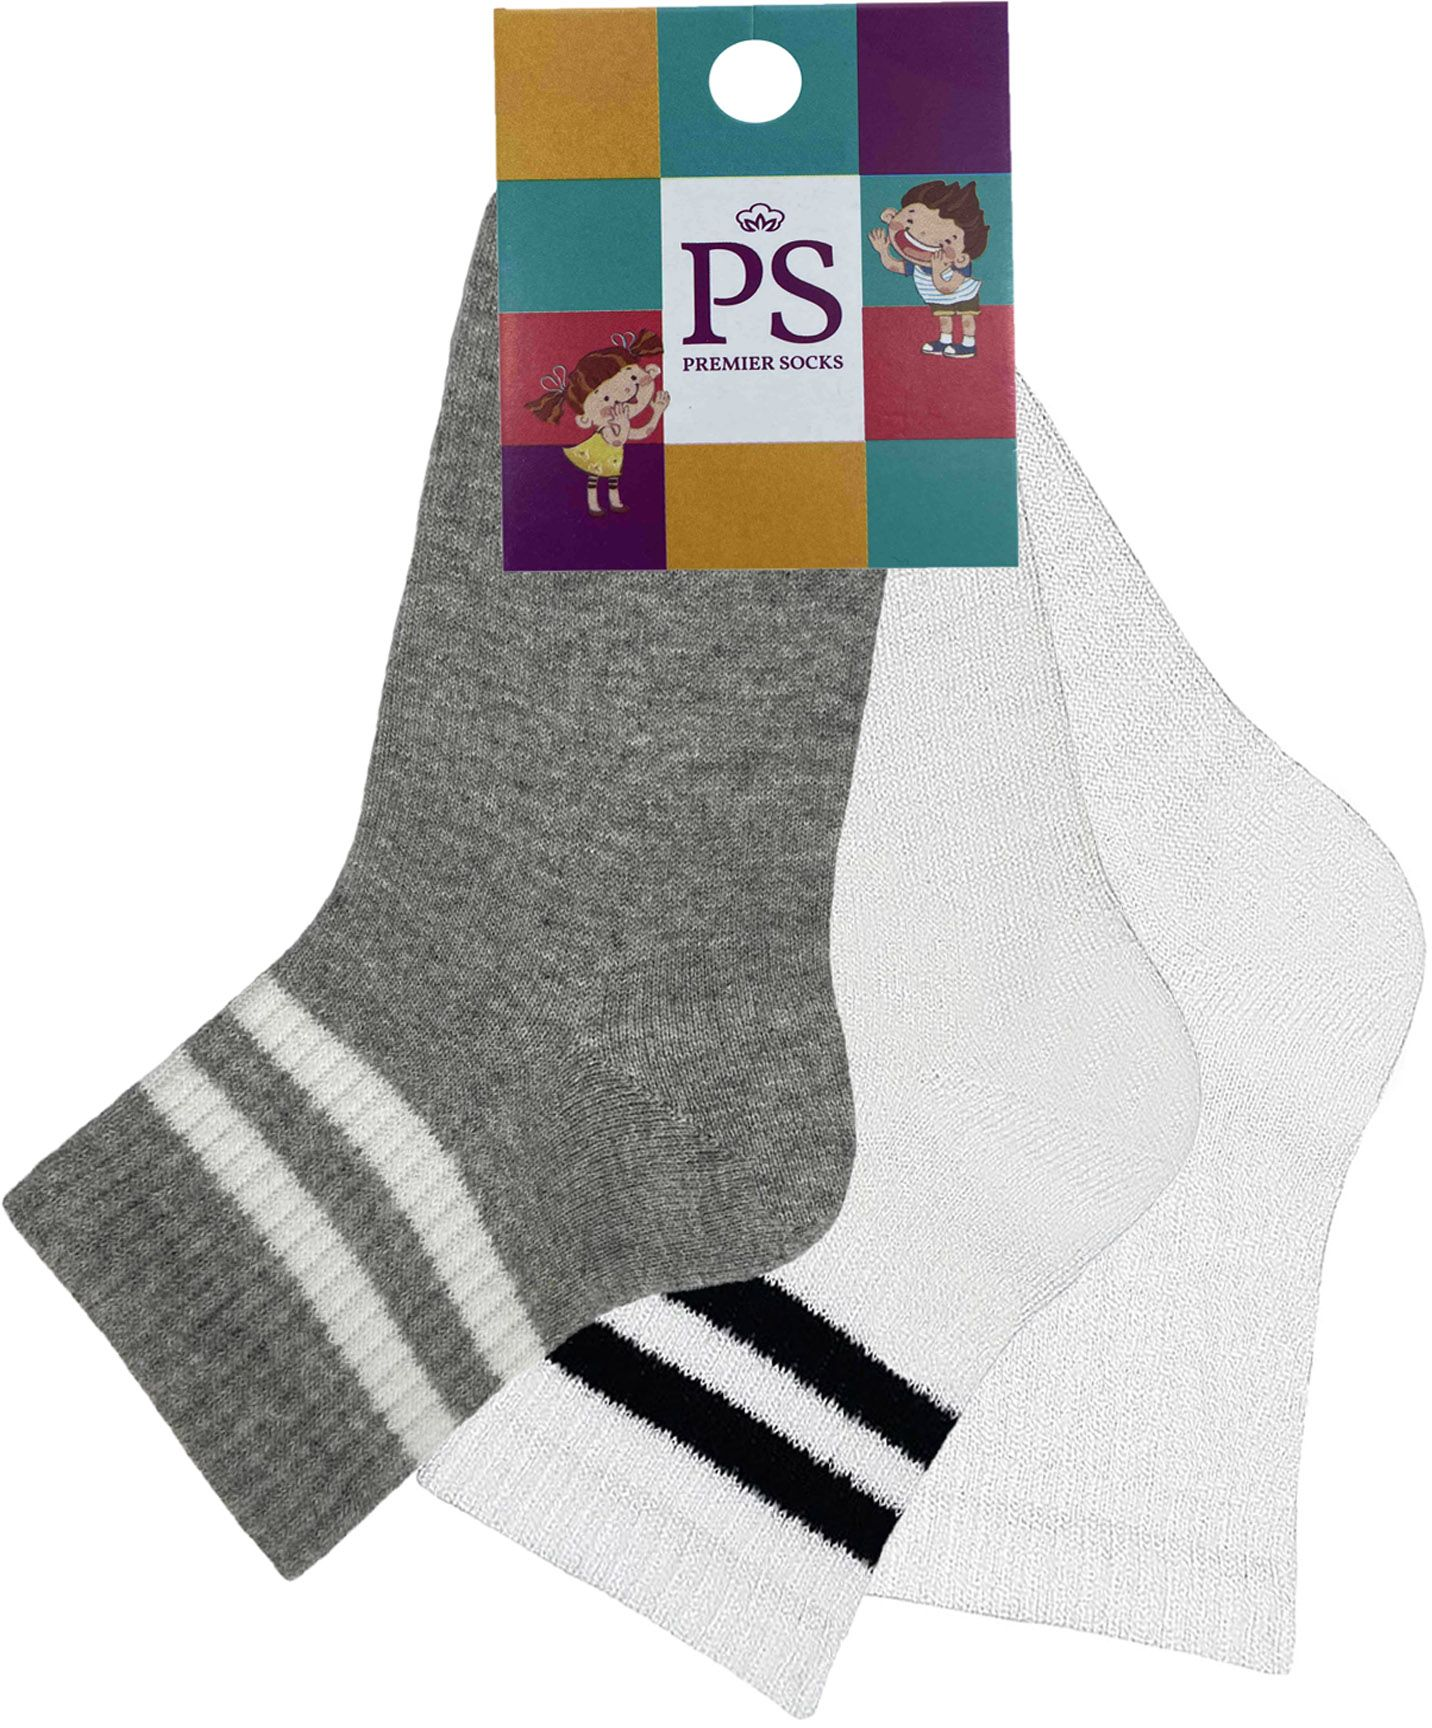 Набір шкарпеток Premier Socks 18-20 3 пари різнокольорові (4820163319919)фото5